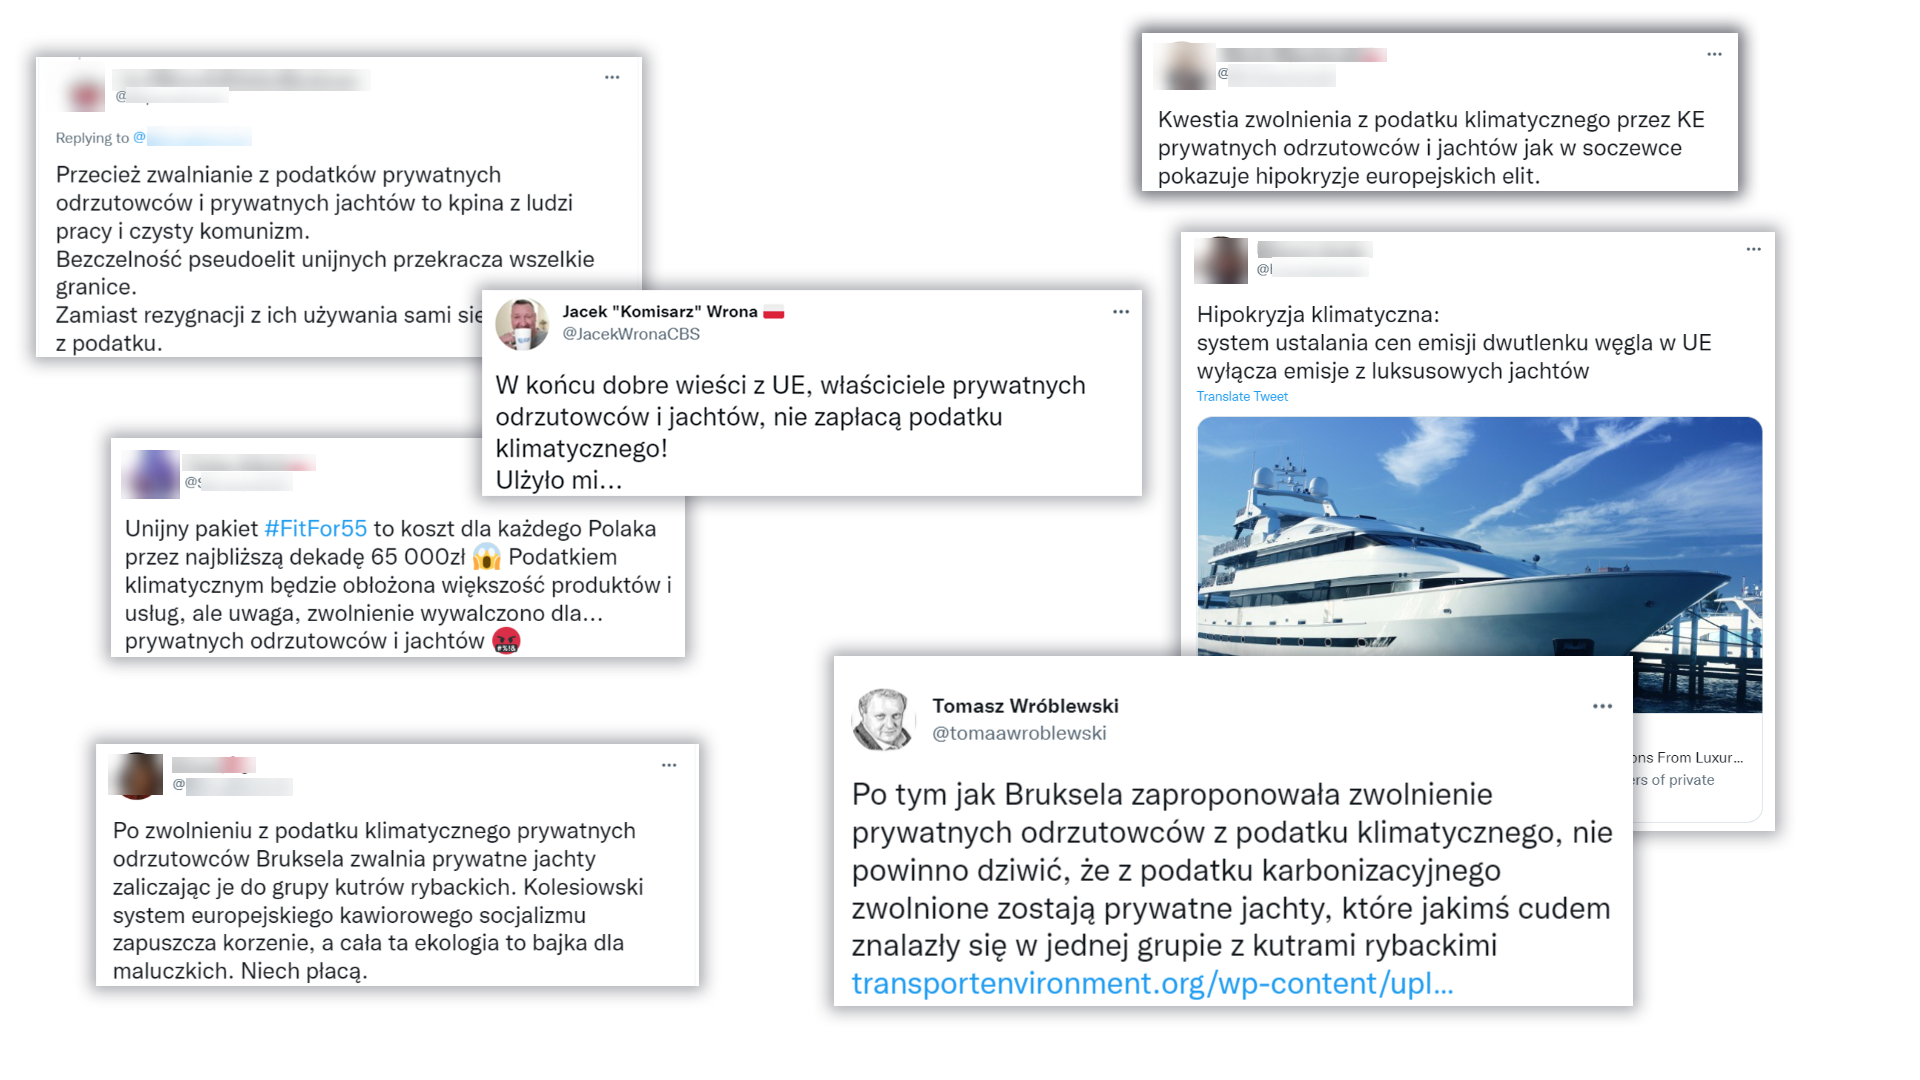 Na Twitterze jest dużo komentarzy, w których internauci pisali o podatku klimatycznym, jachtach i prywatnych odrzutowcach